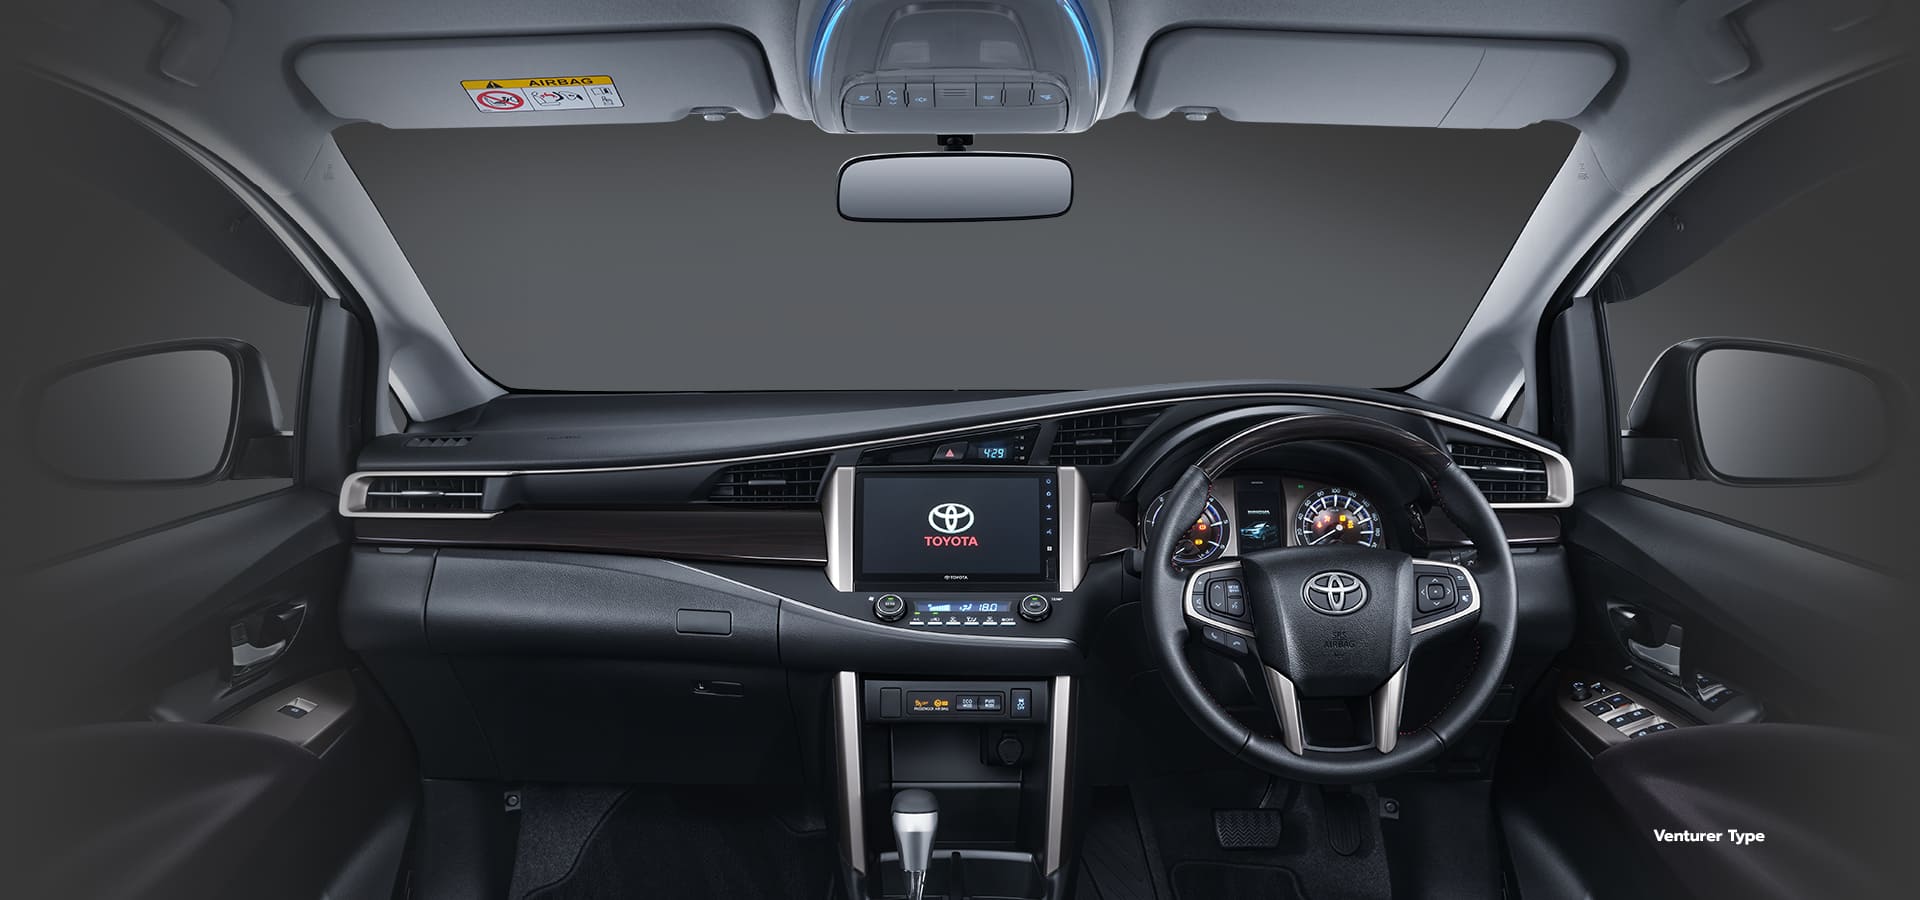 Image Toyota New Venture